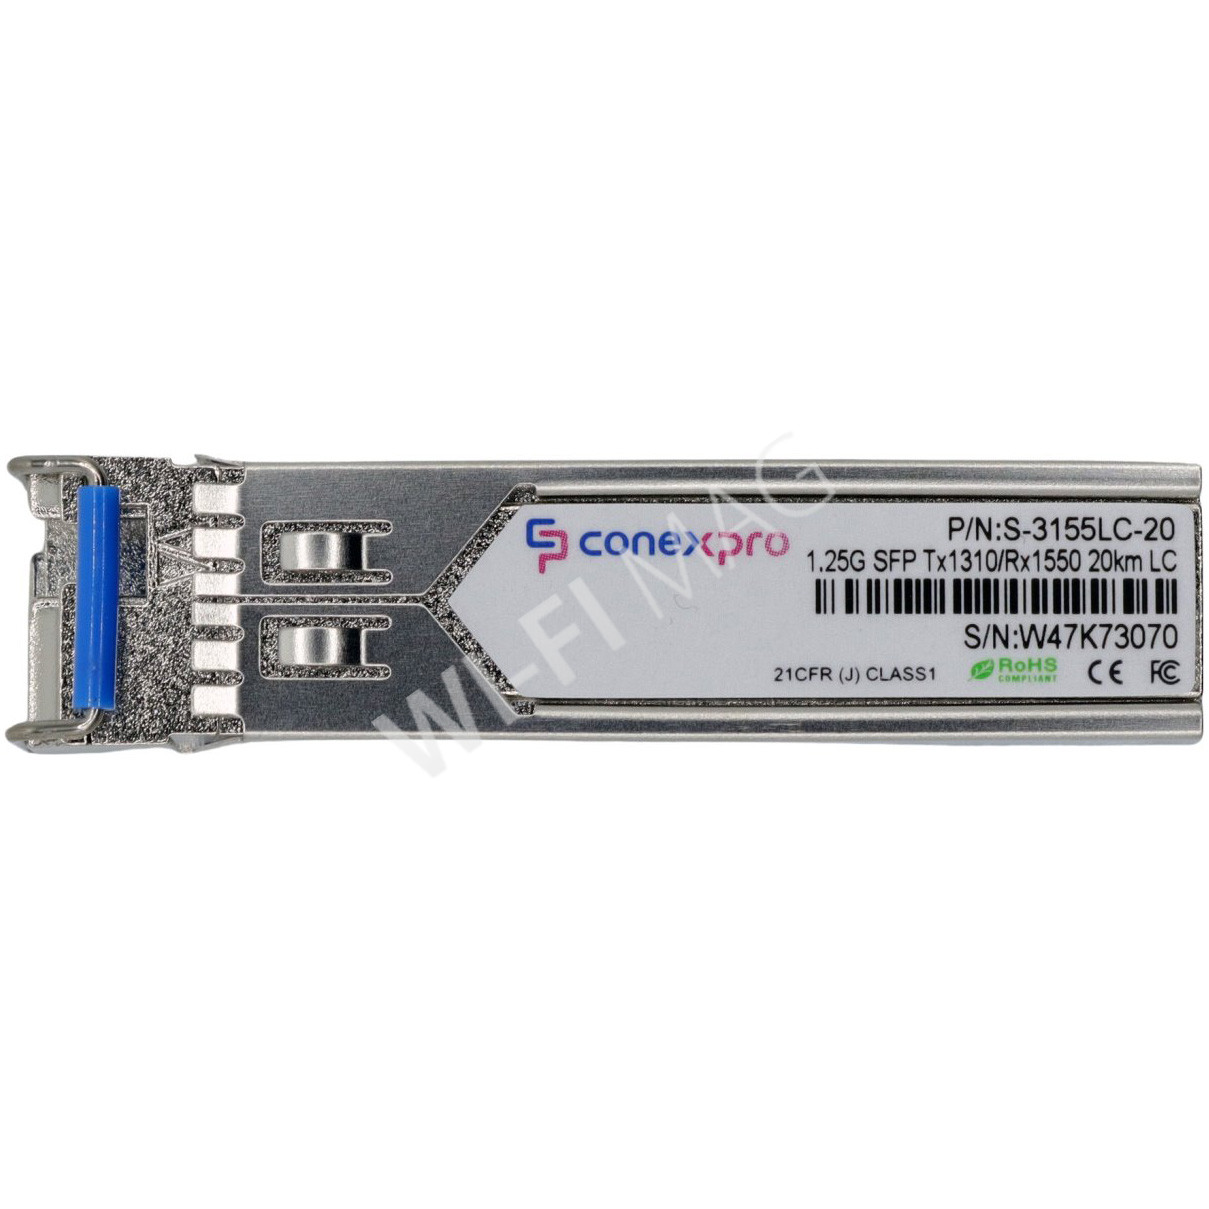 Conexpro S-3155LC-20 модуль SFP Single Mode, 1.25 Гбит/с, LC, WDM/BiDi, 20 км (Tx=1310/Rx=1550)